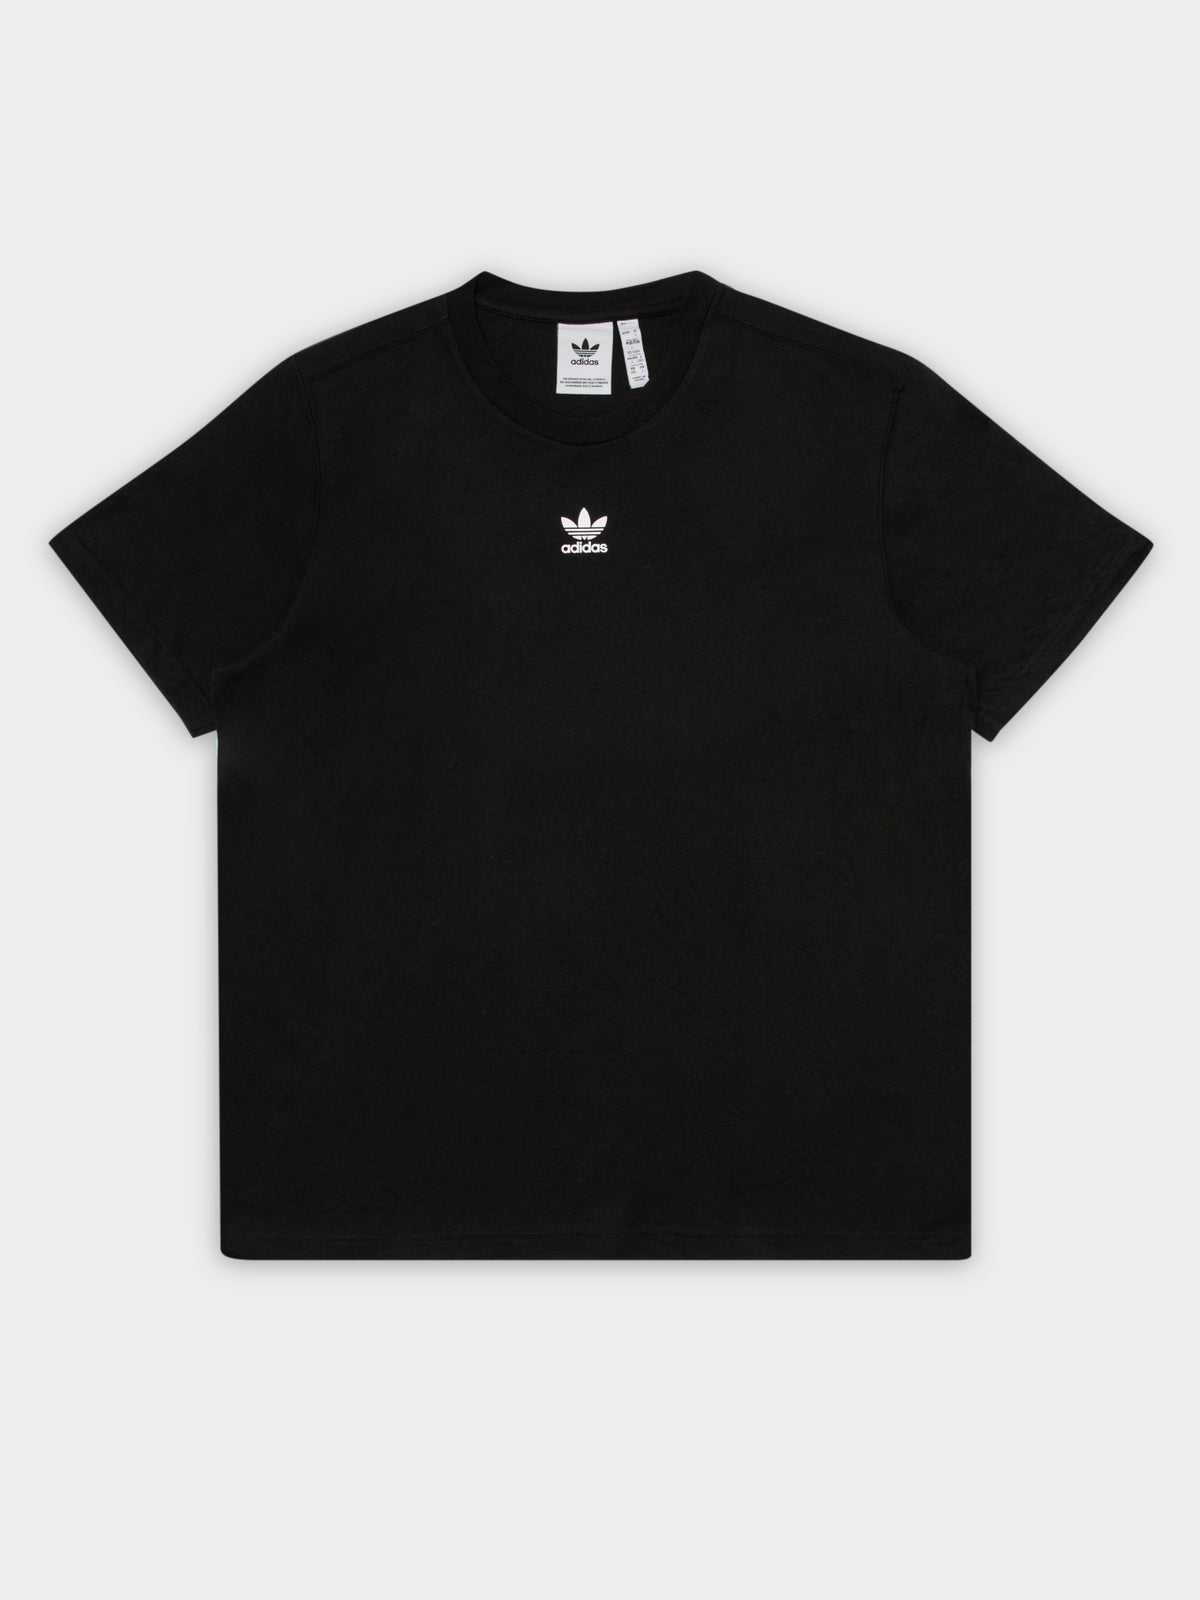 Trefoil Stream Line Short Sleeve T-Shirt in Black